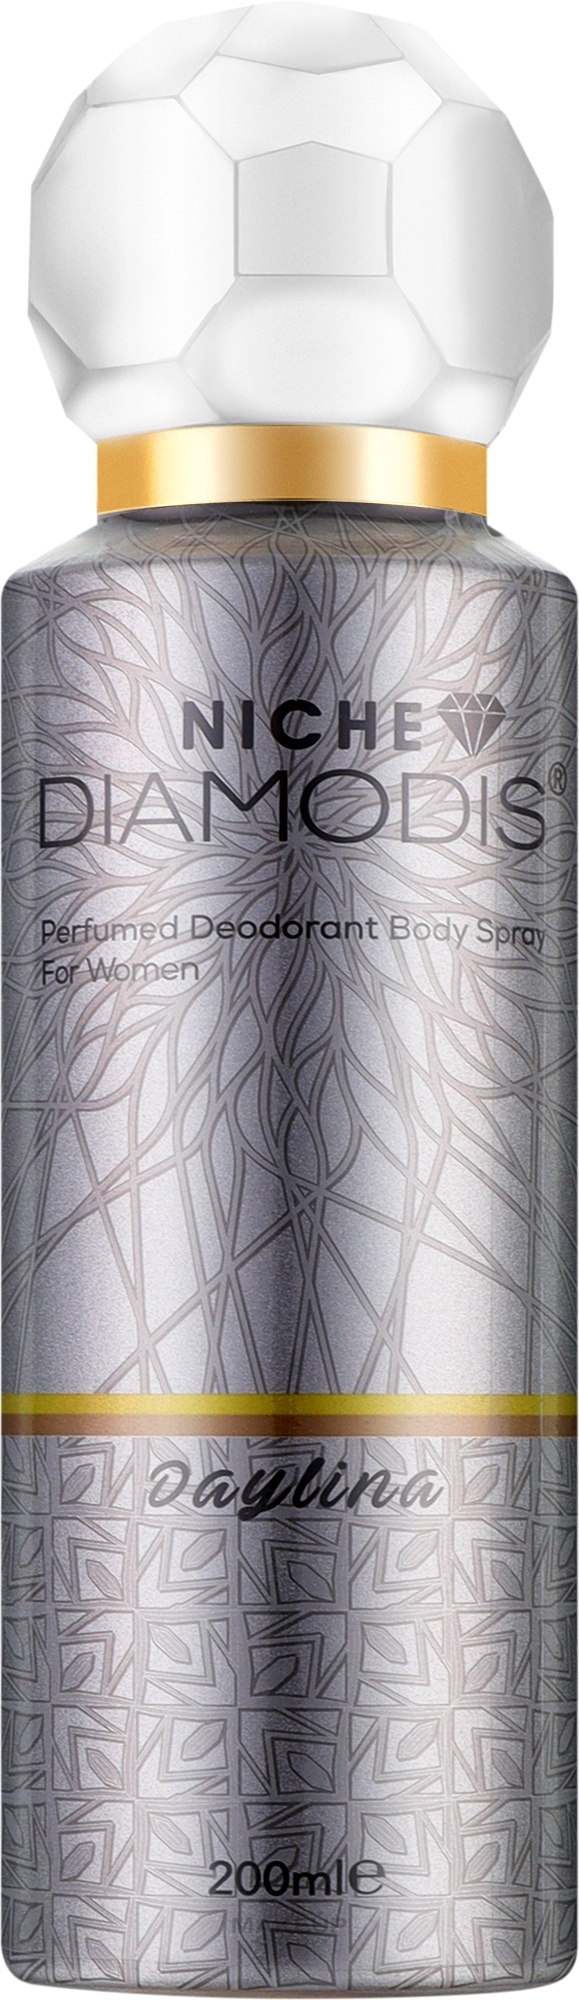 Нішевий дезодорант для тіла - Niche Diamodis Daylina Perfumed Deodorant Body Spray — фото 200ml